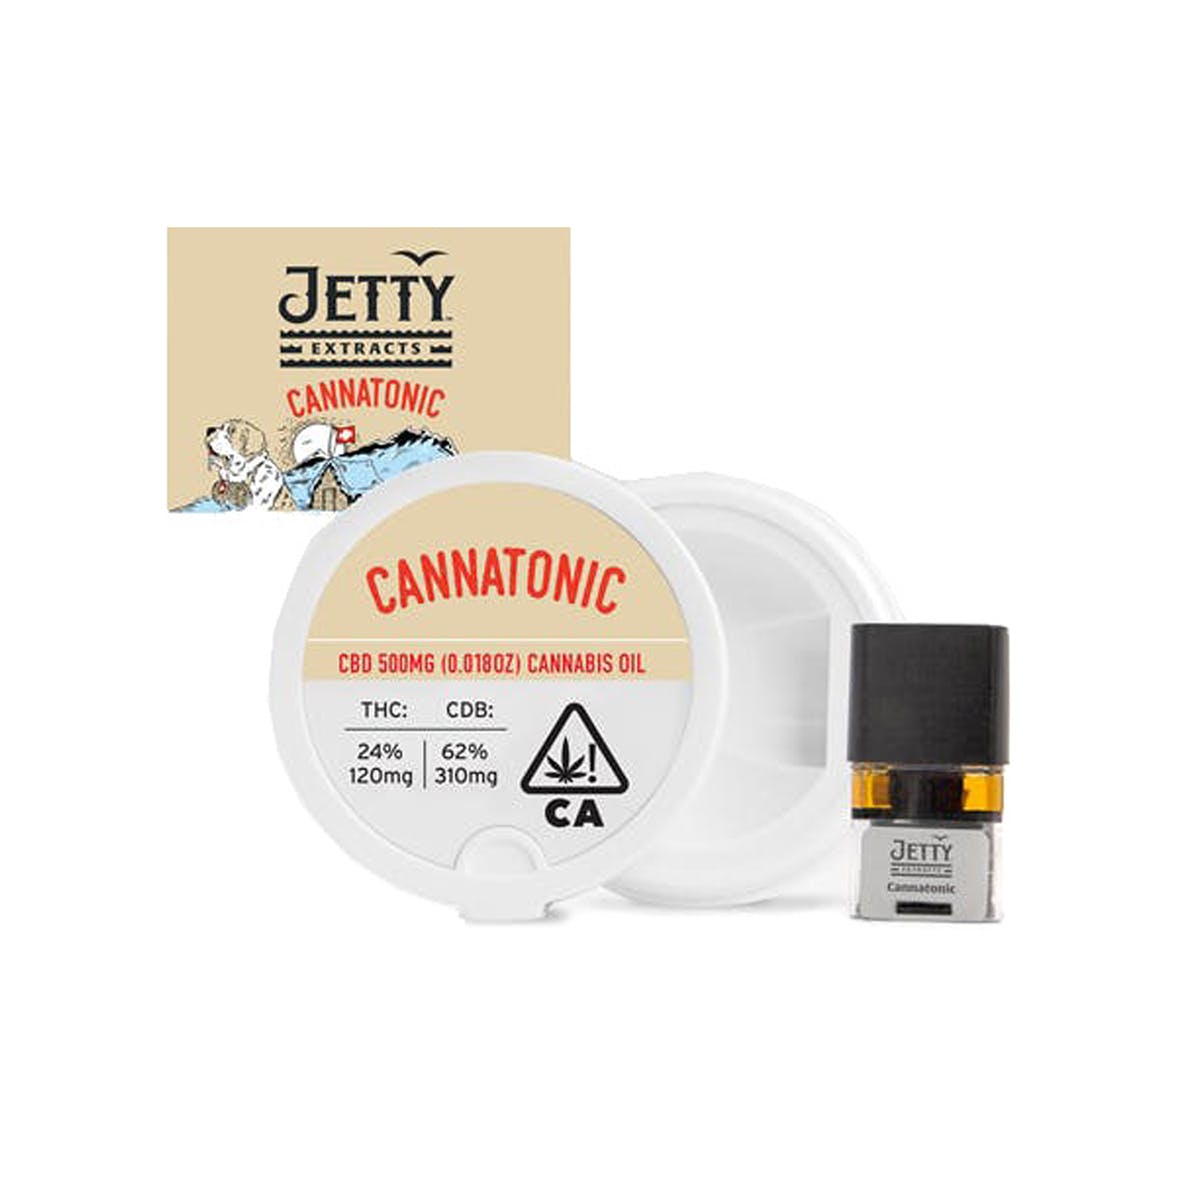 marijuana-dispensaries-mosaic-in-los-angeles-pax-era-pod-jetty-extracts-cannatonic-31